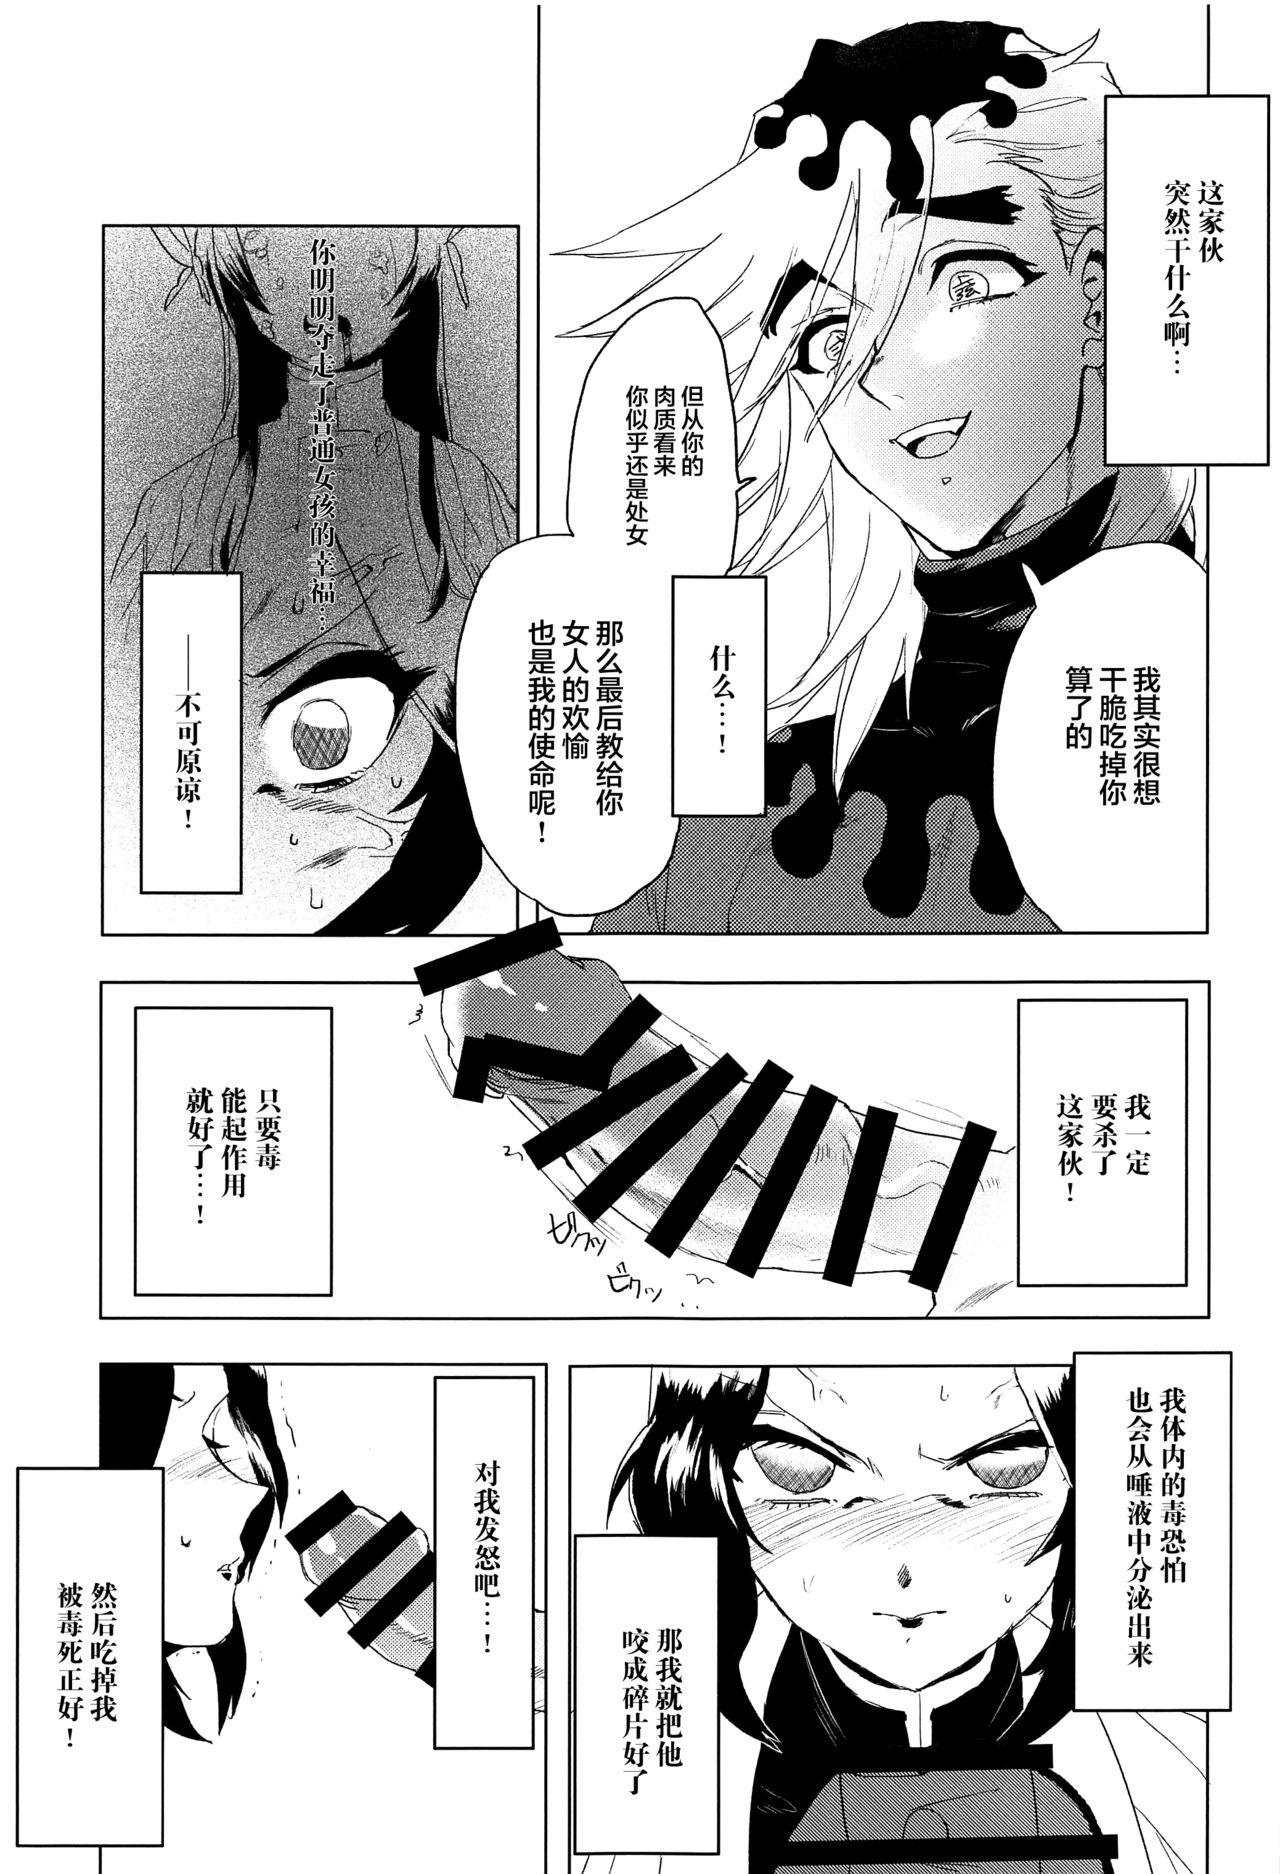 Teamskeet Mushibashira Zecchou Kairaku Shugou Acme Jigoku - Kimetsu no yaiba | demon slayer Rimjob - Page 4